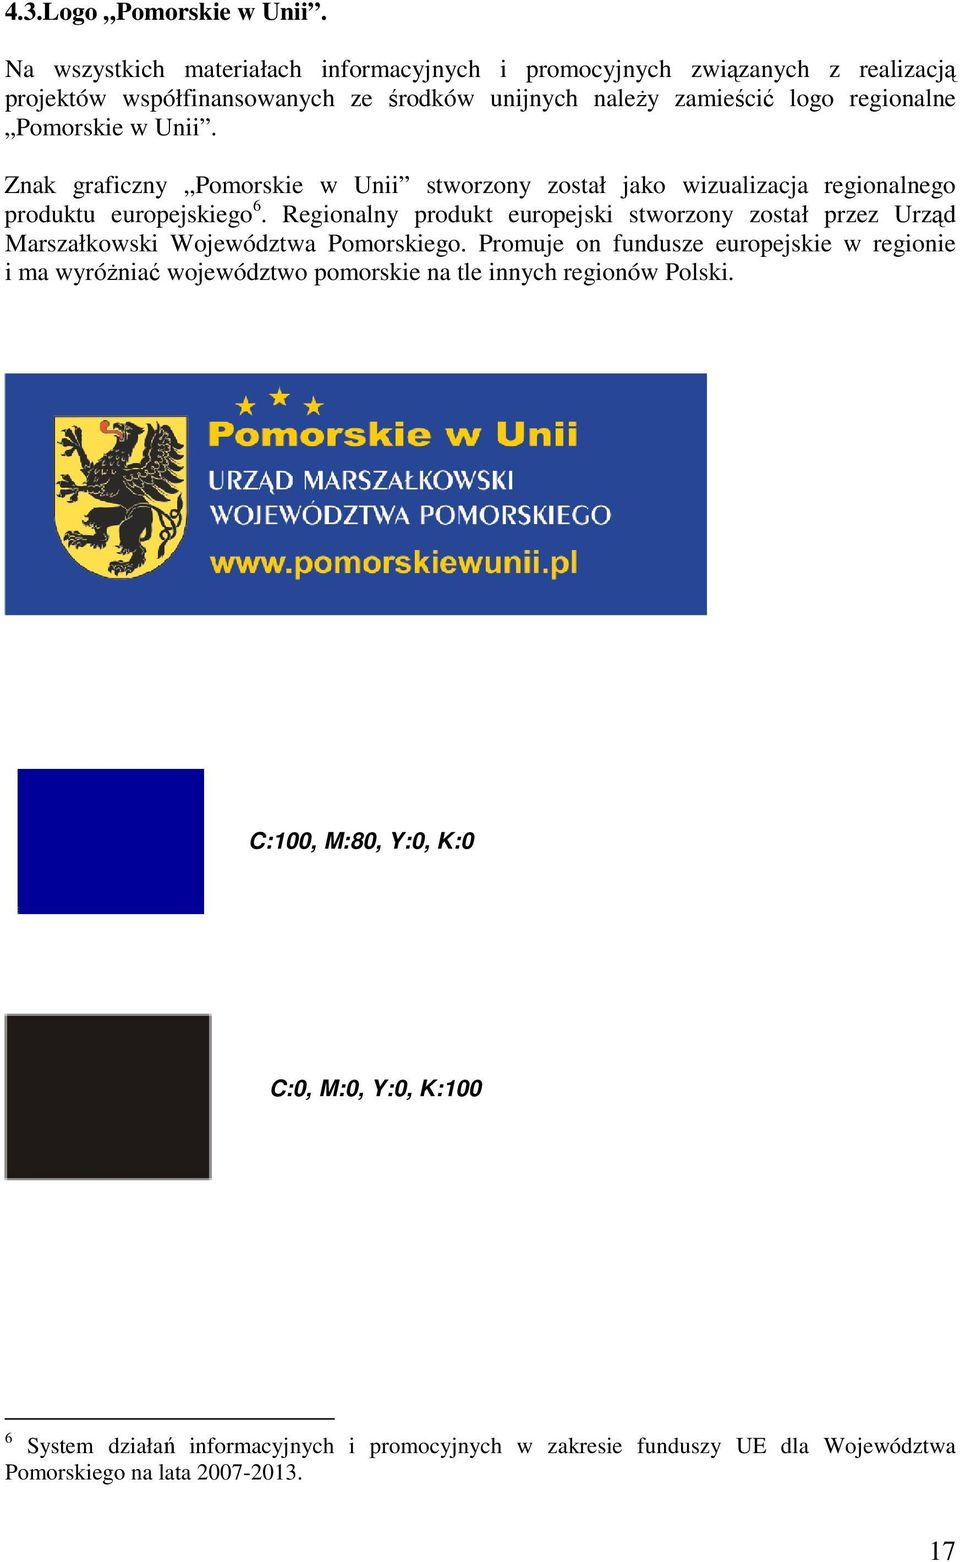 Pomorskie w Unii. Znak graficzny Pomorskie w Unii stworzony został jako wizualizacja regionalnego produktu europejskiego 6.